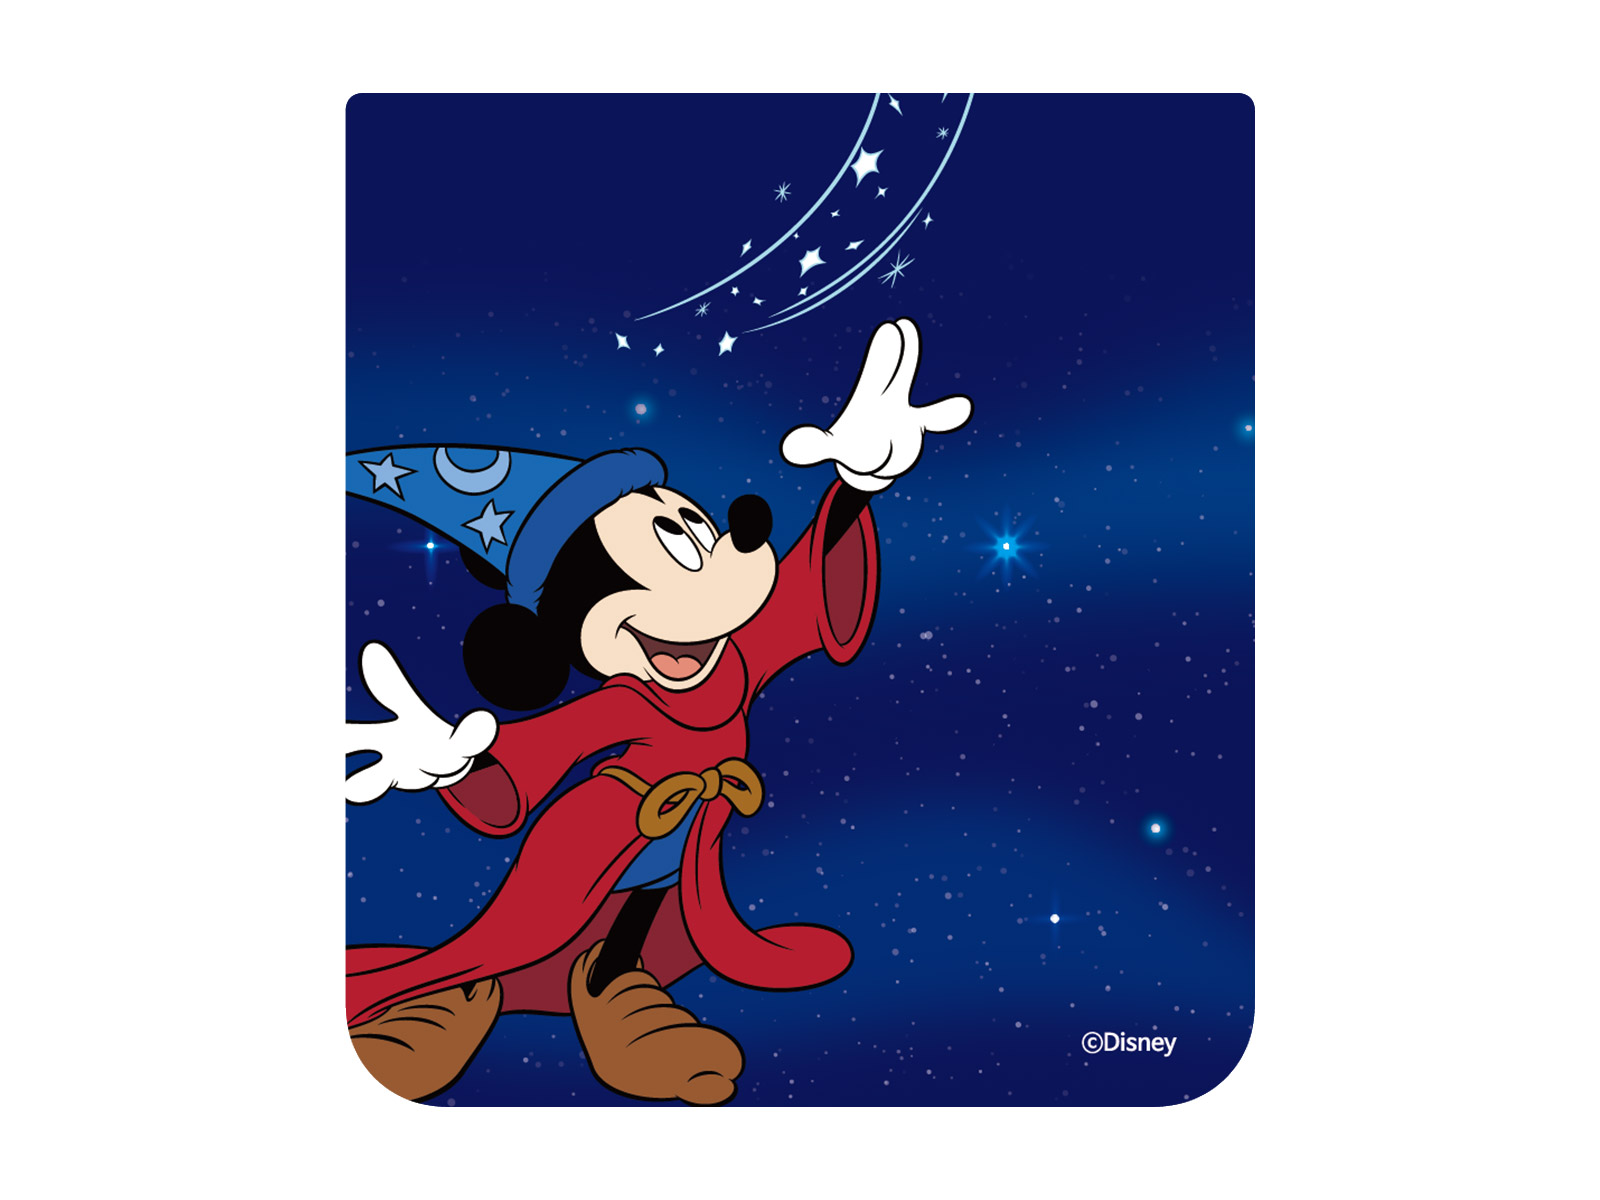 Disney Fantasia Interactive Card